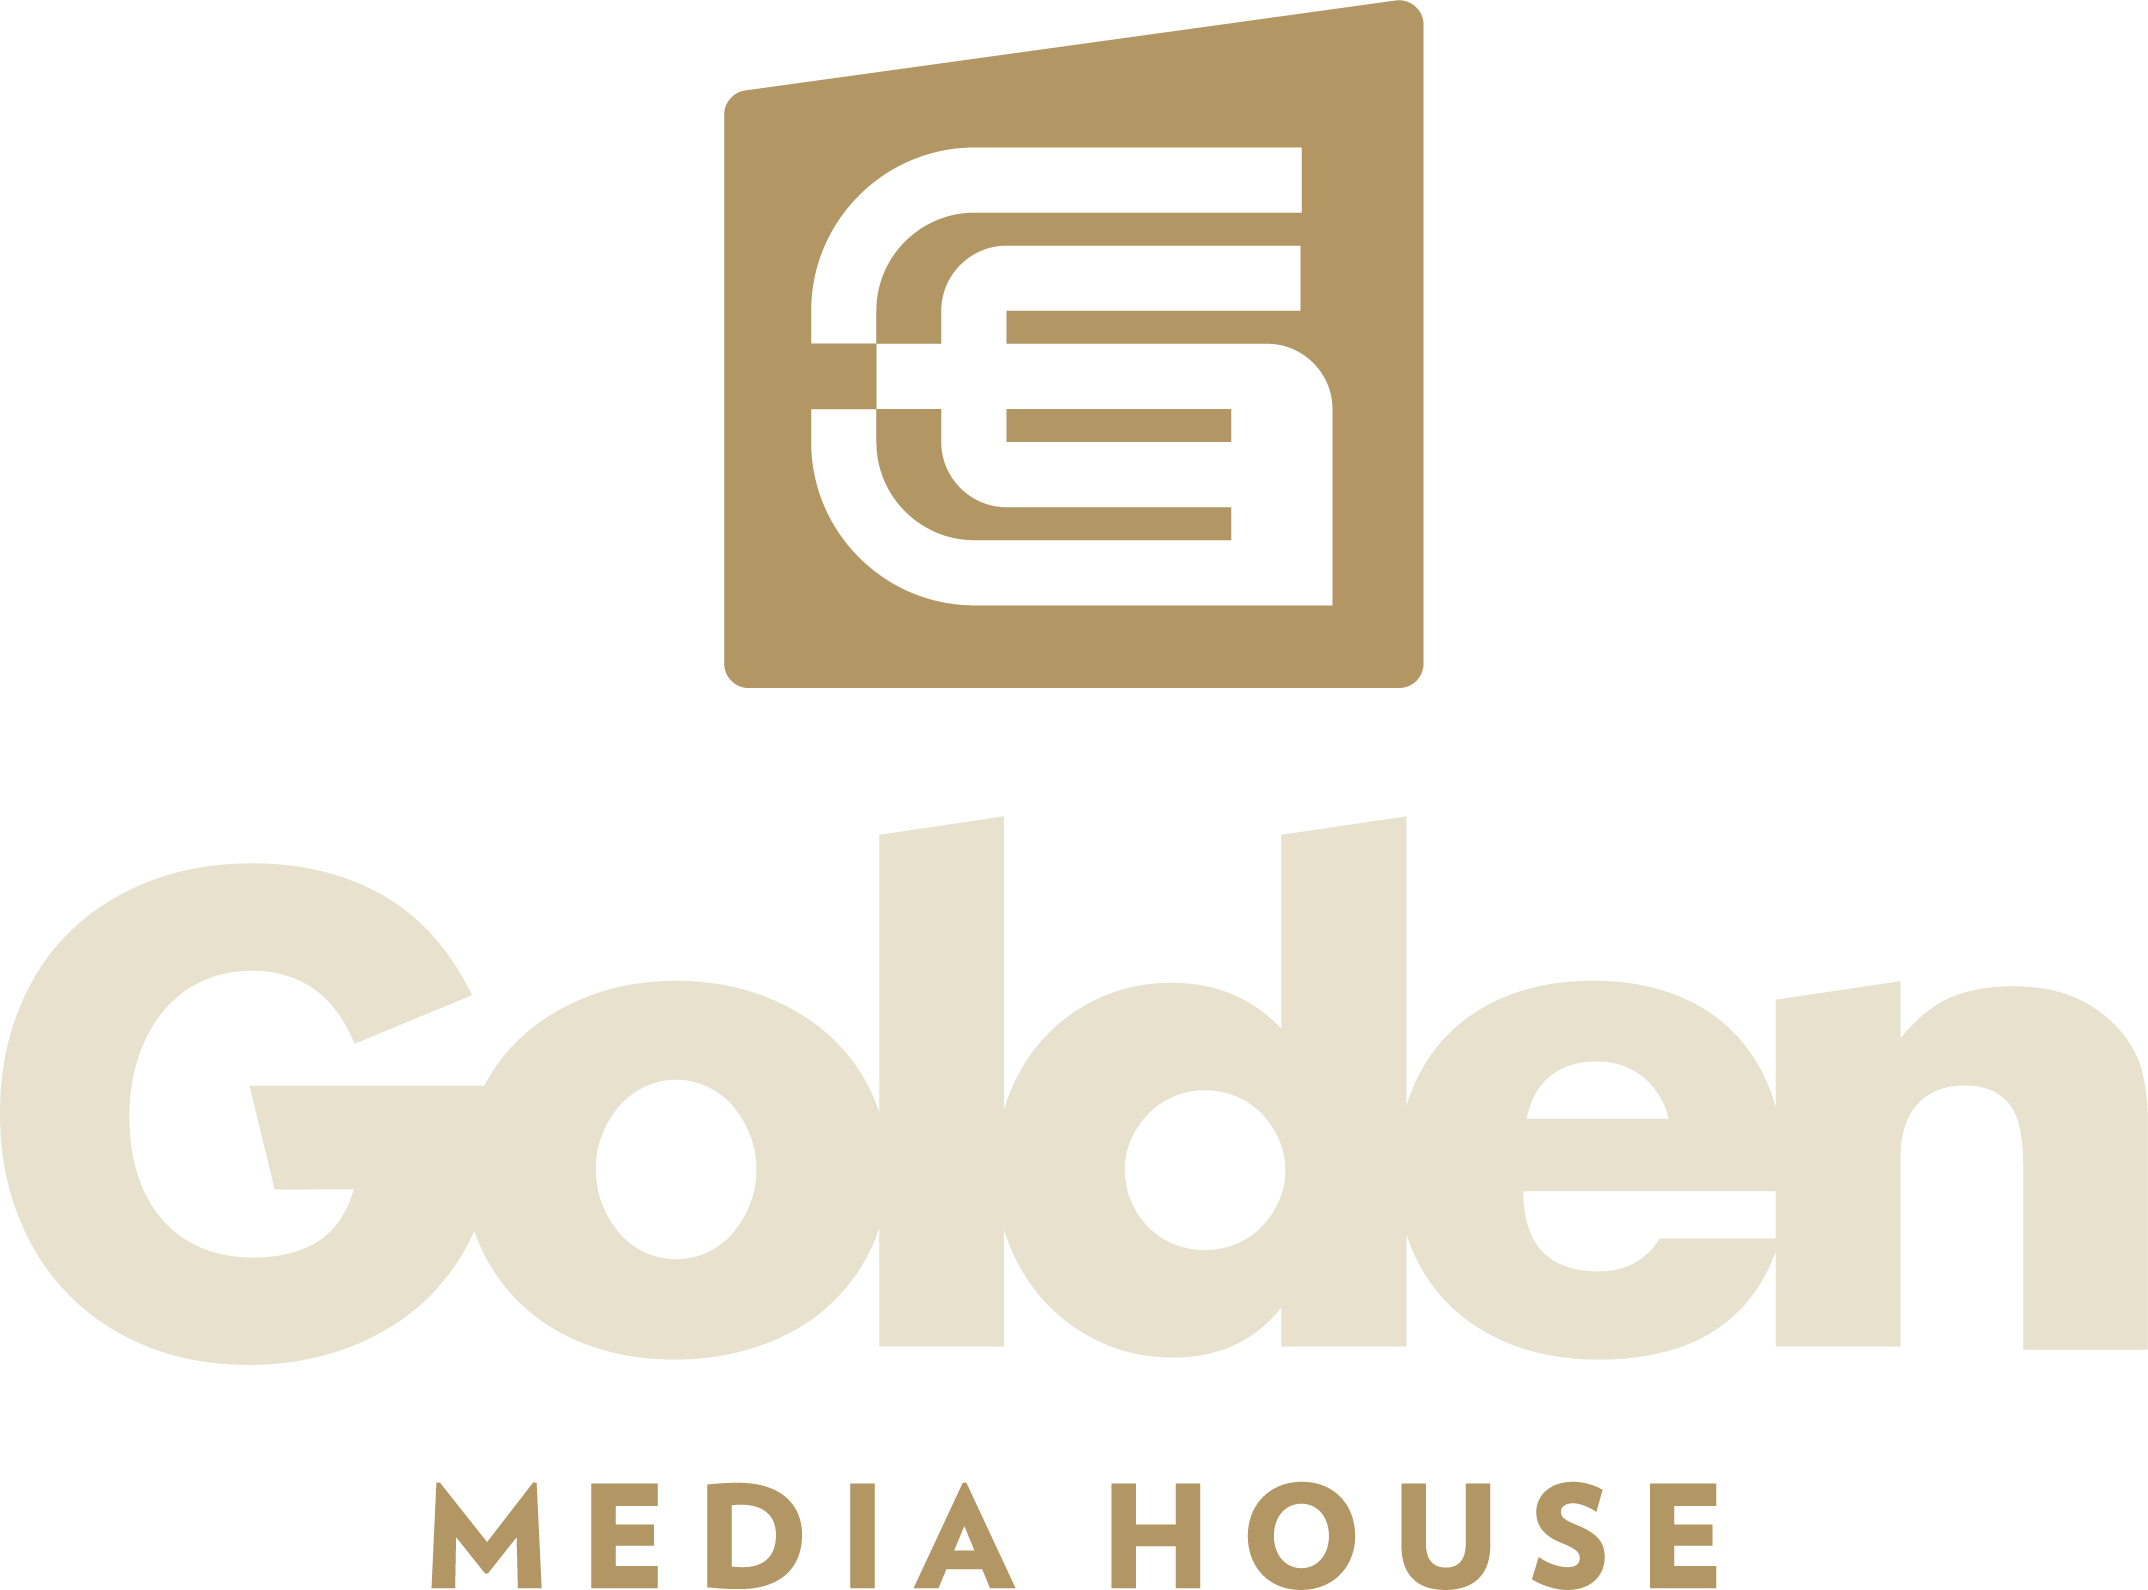 GOLDEN MEDIA HOUSE